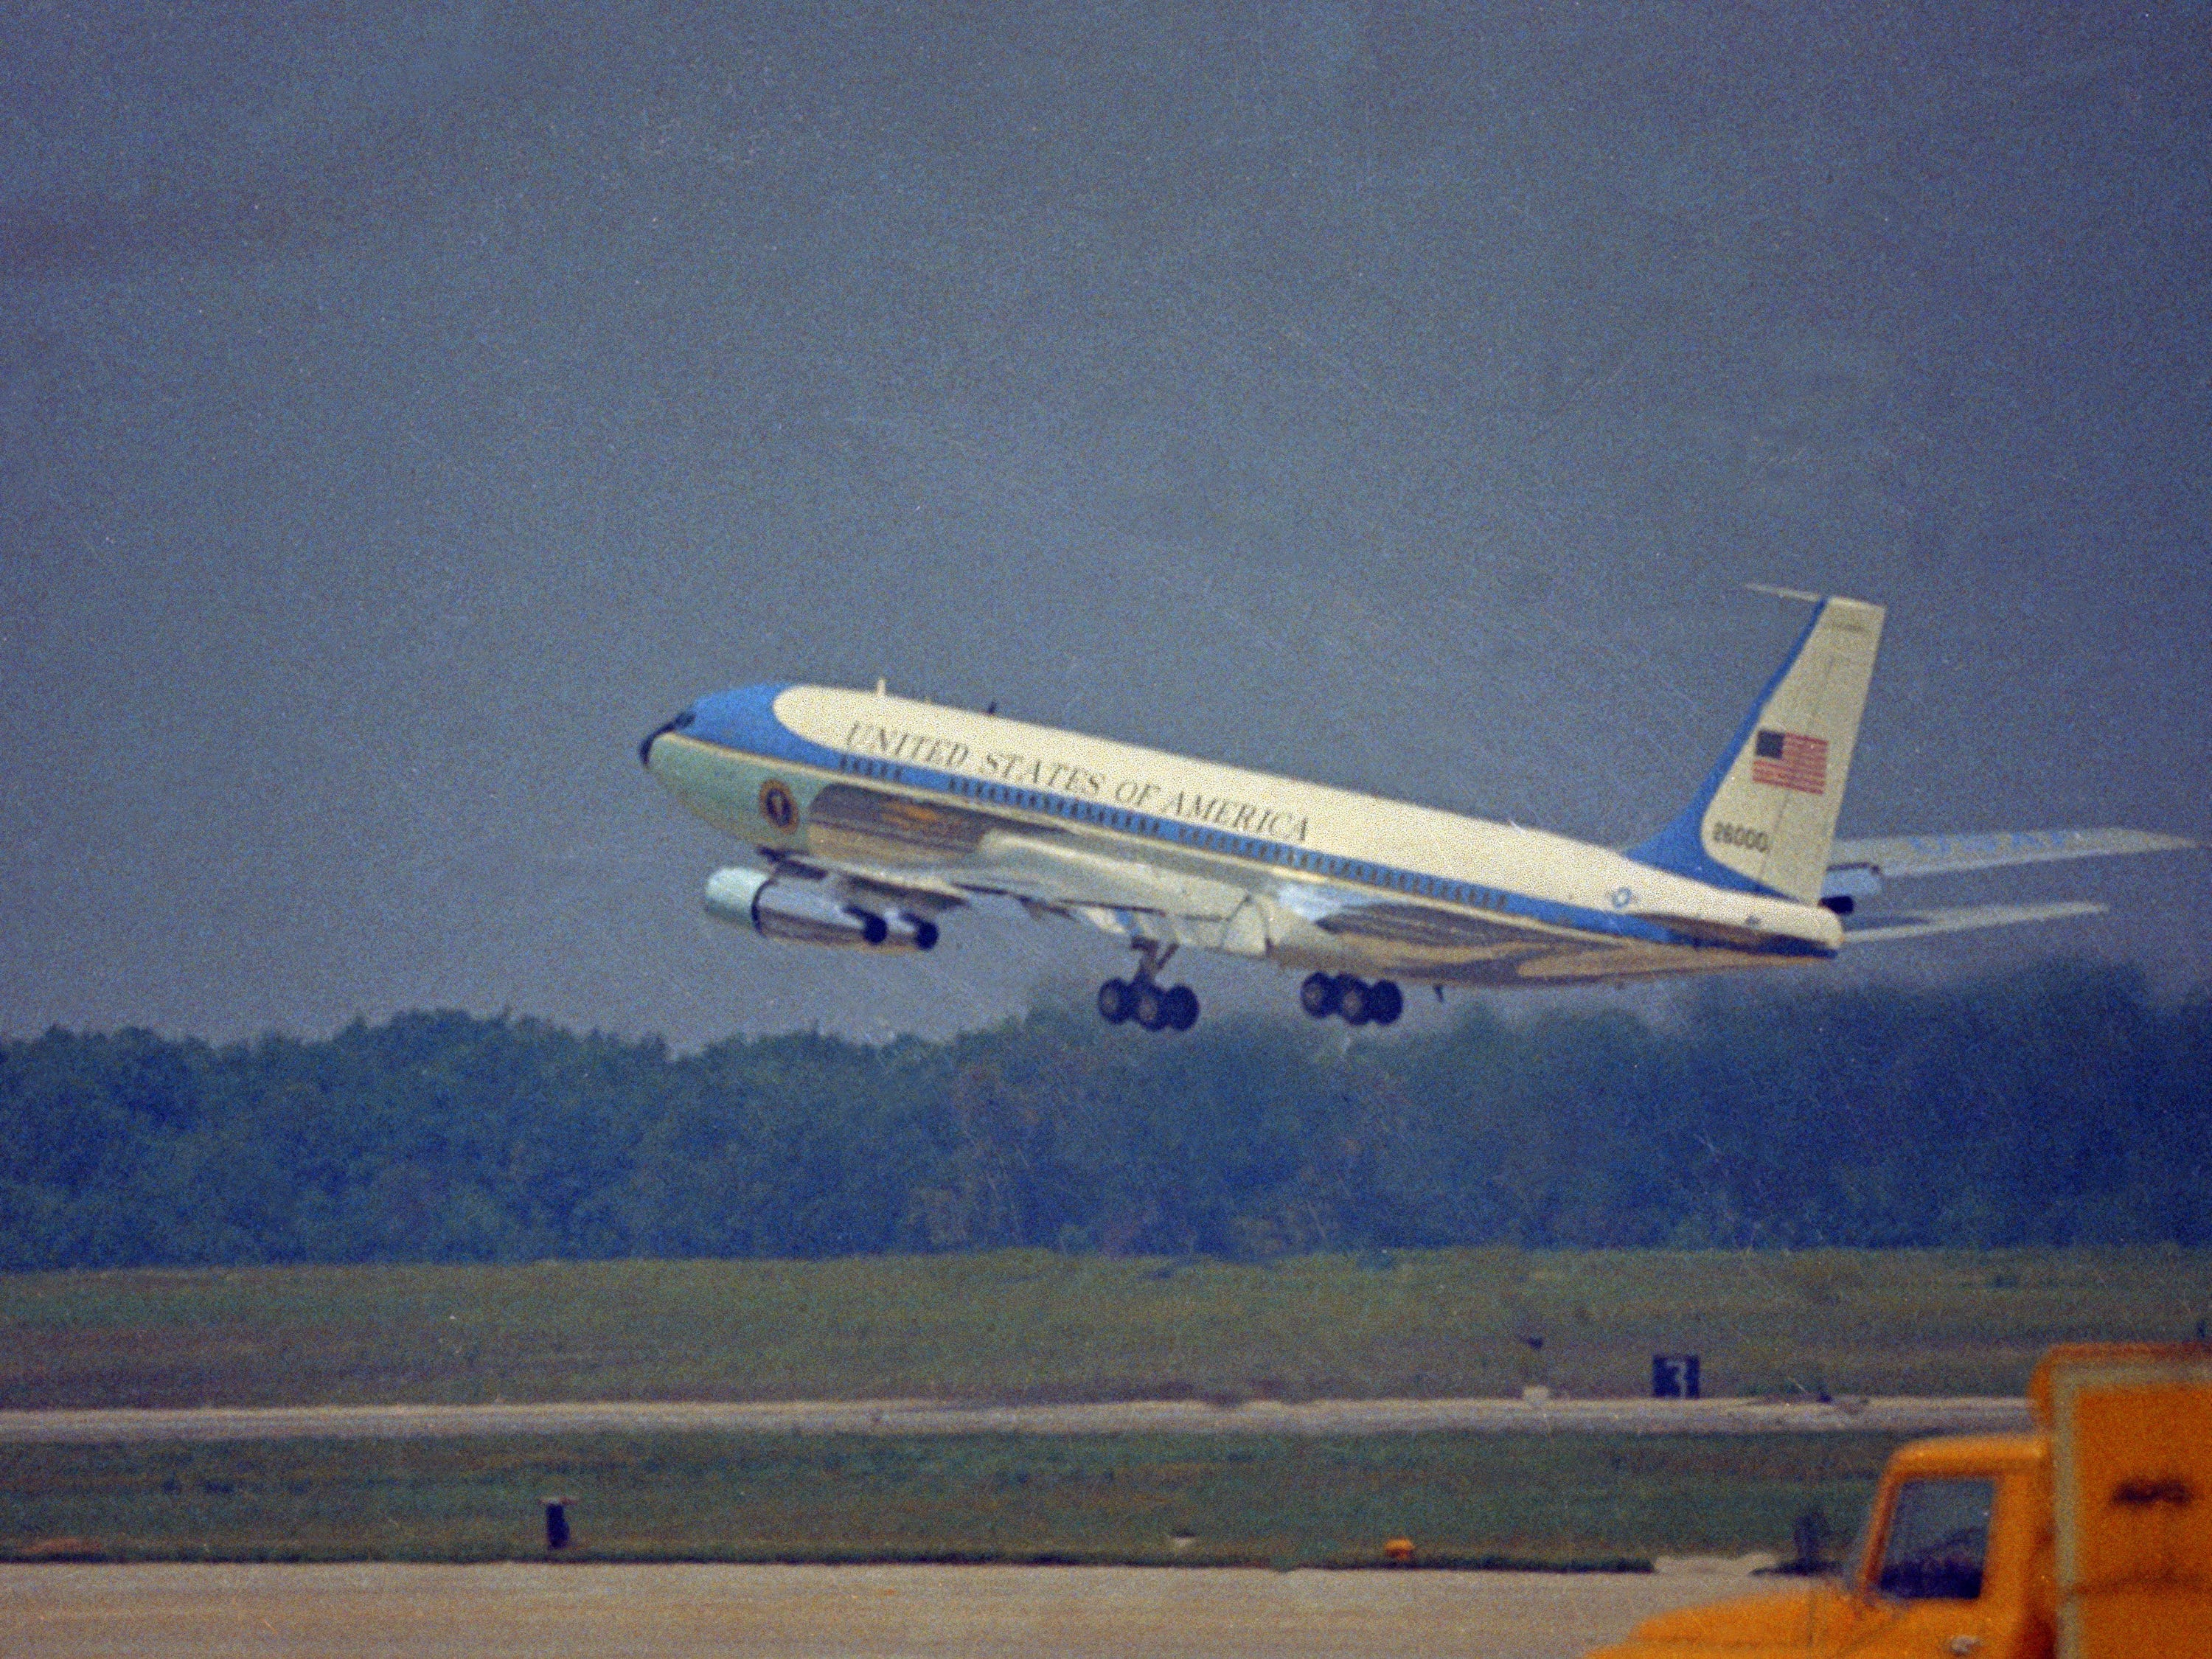 Air Force One, das Flugzeug des Präsidenten der Vereinigten Staaten, wird beim Start im Juni 1968 gesehen.